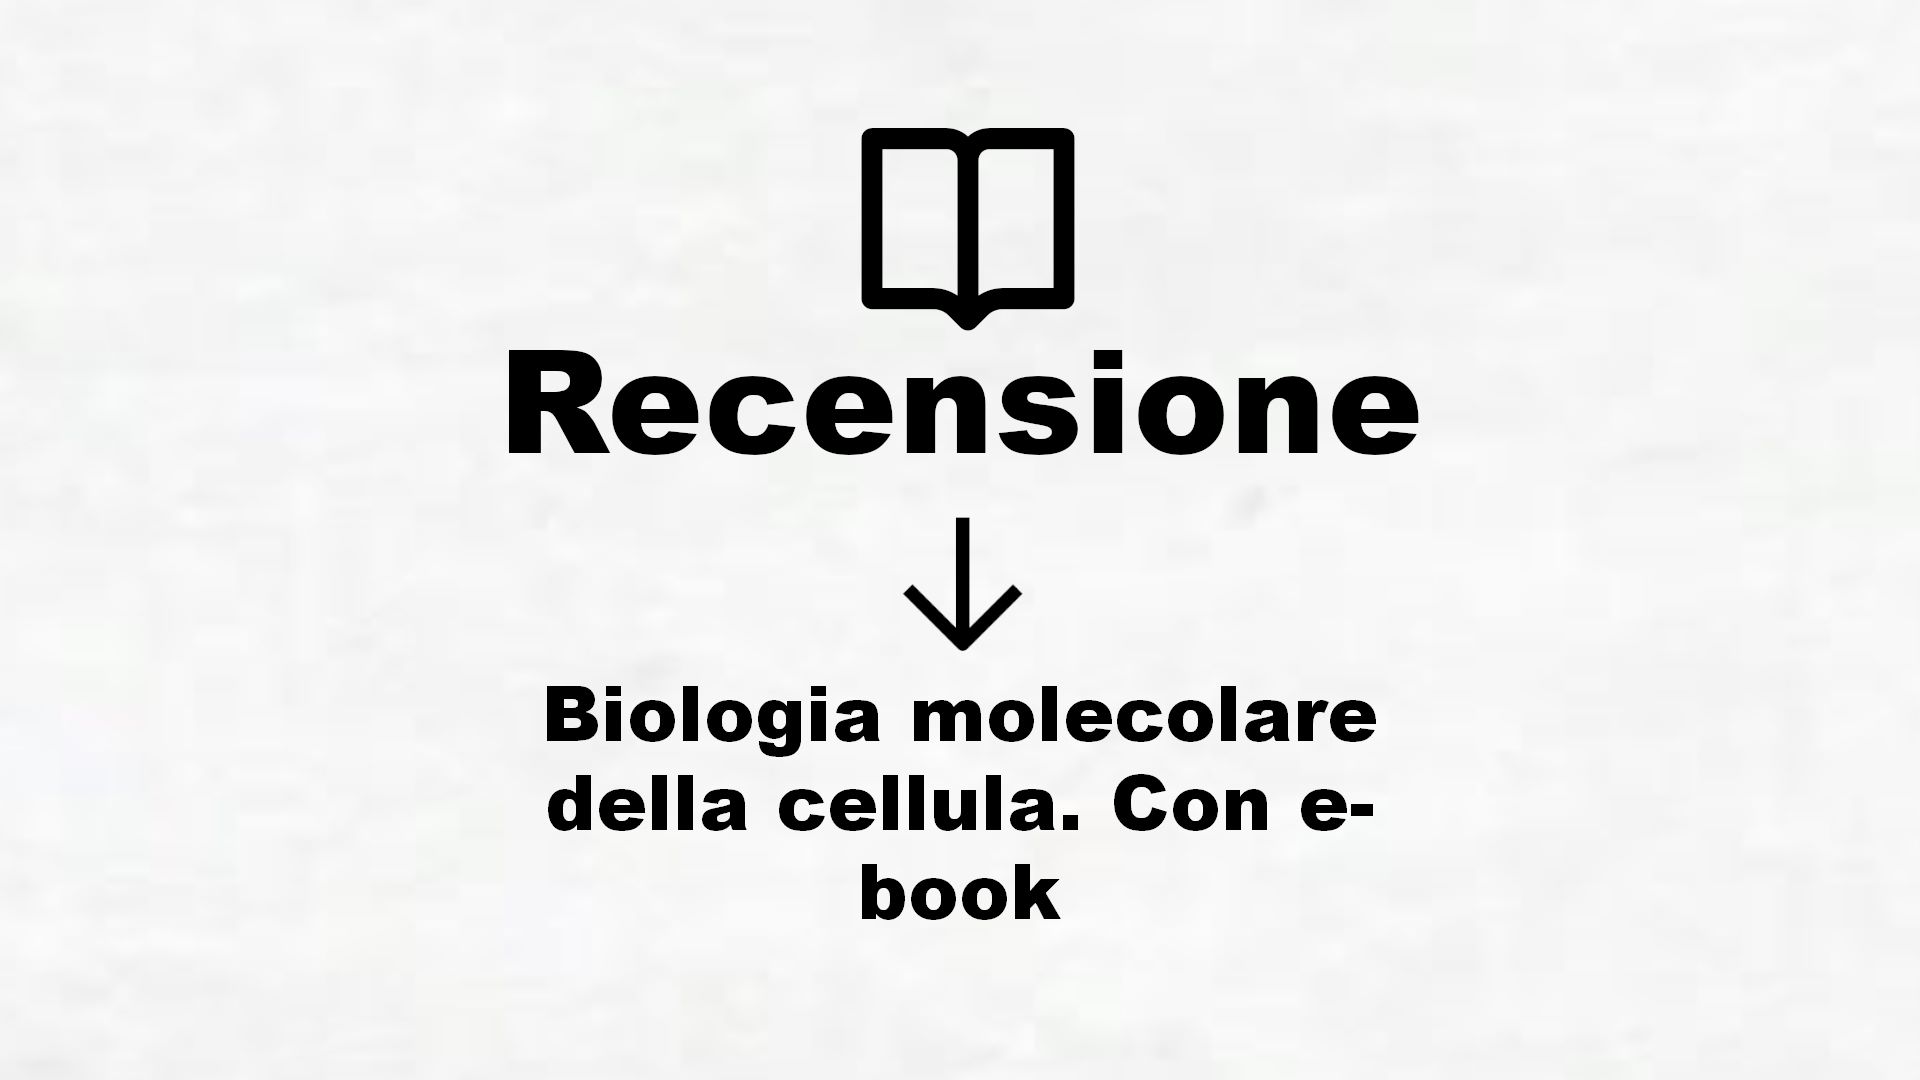 Biologia molecolare della cellula. Con e-book – Recensione Libro